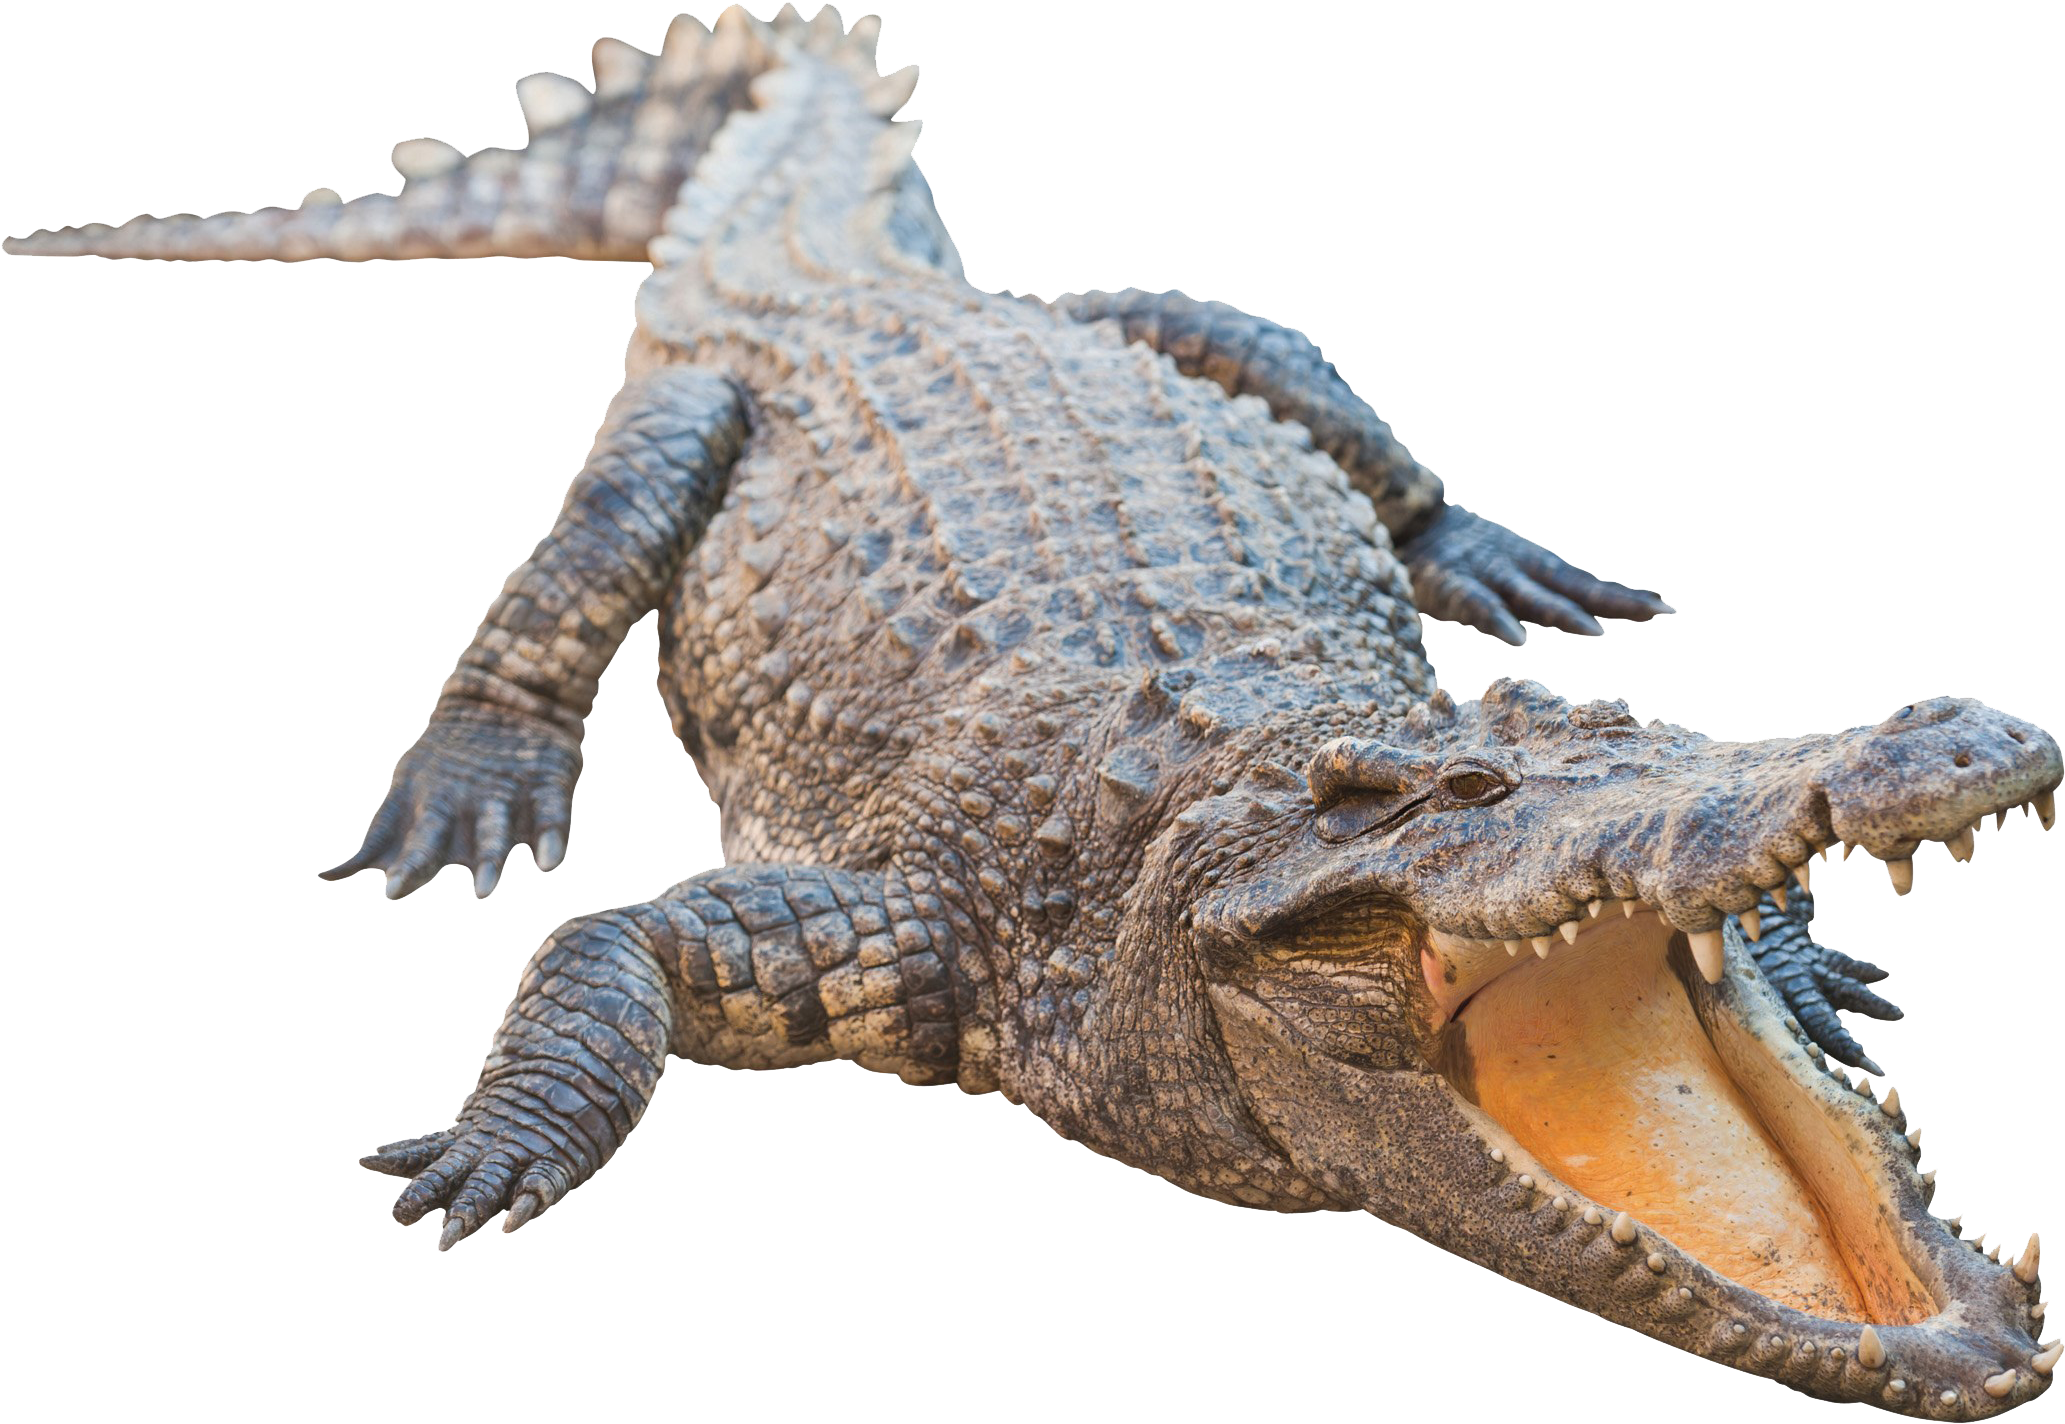 HD Real Alligator Transparent Image.